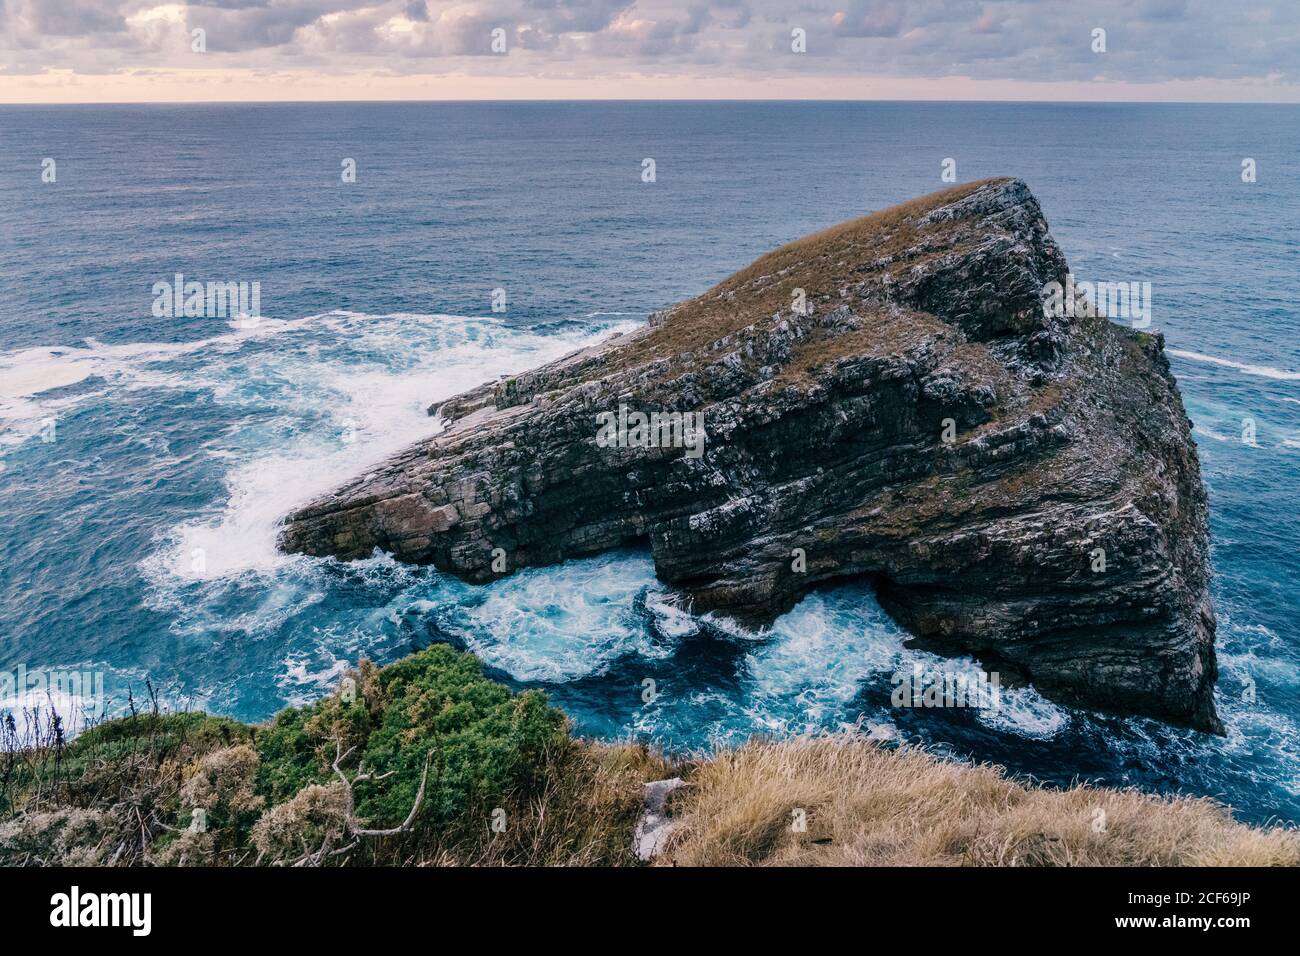 Vagues de mer mousseuse qui se roulent et se brisent près d'une roche rugueuse soirée nuageux dans la nature Banque D'Images